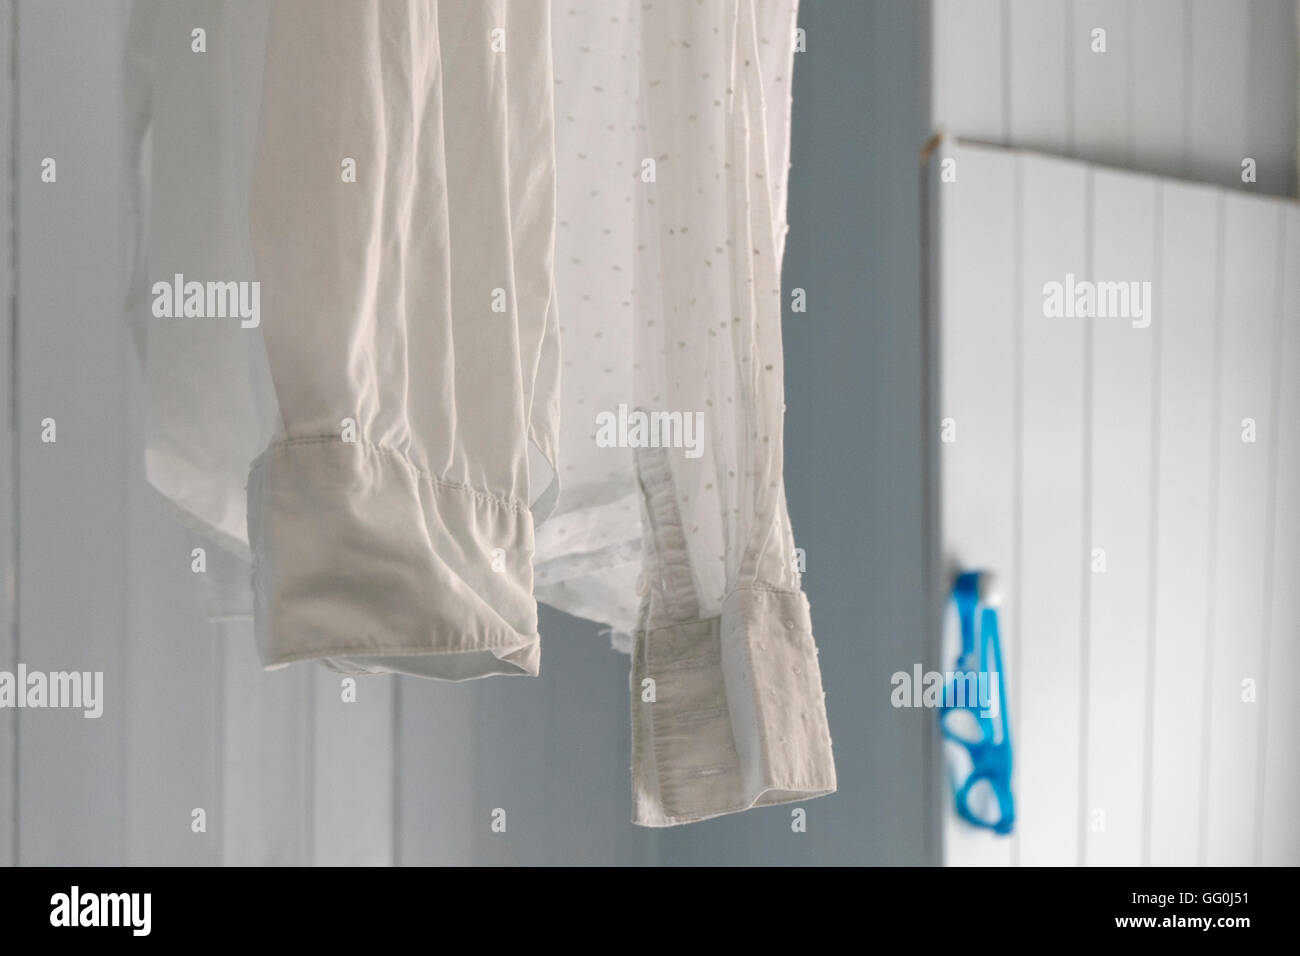 Weißes Hemd zum Trocknen auf eine Vorhangschiene Dusche im Badezimmer aufgehängt. Stockfoto